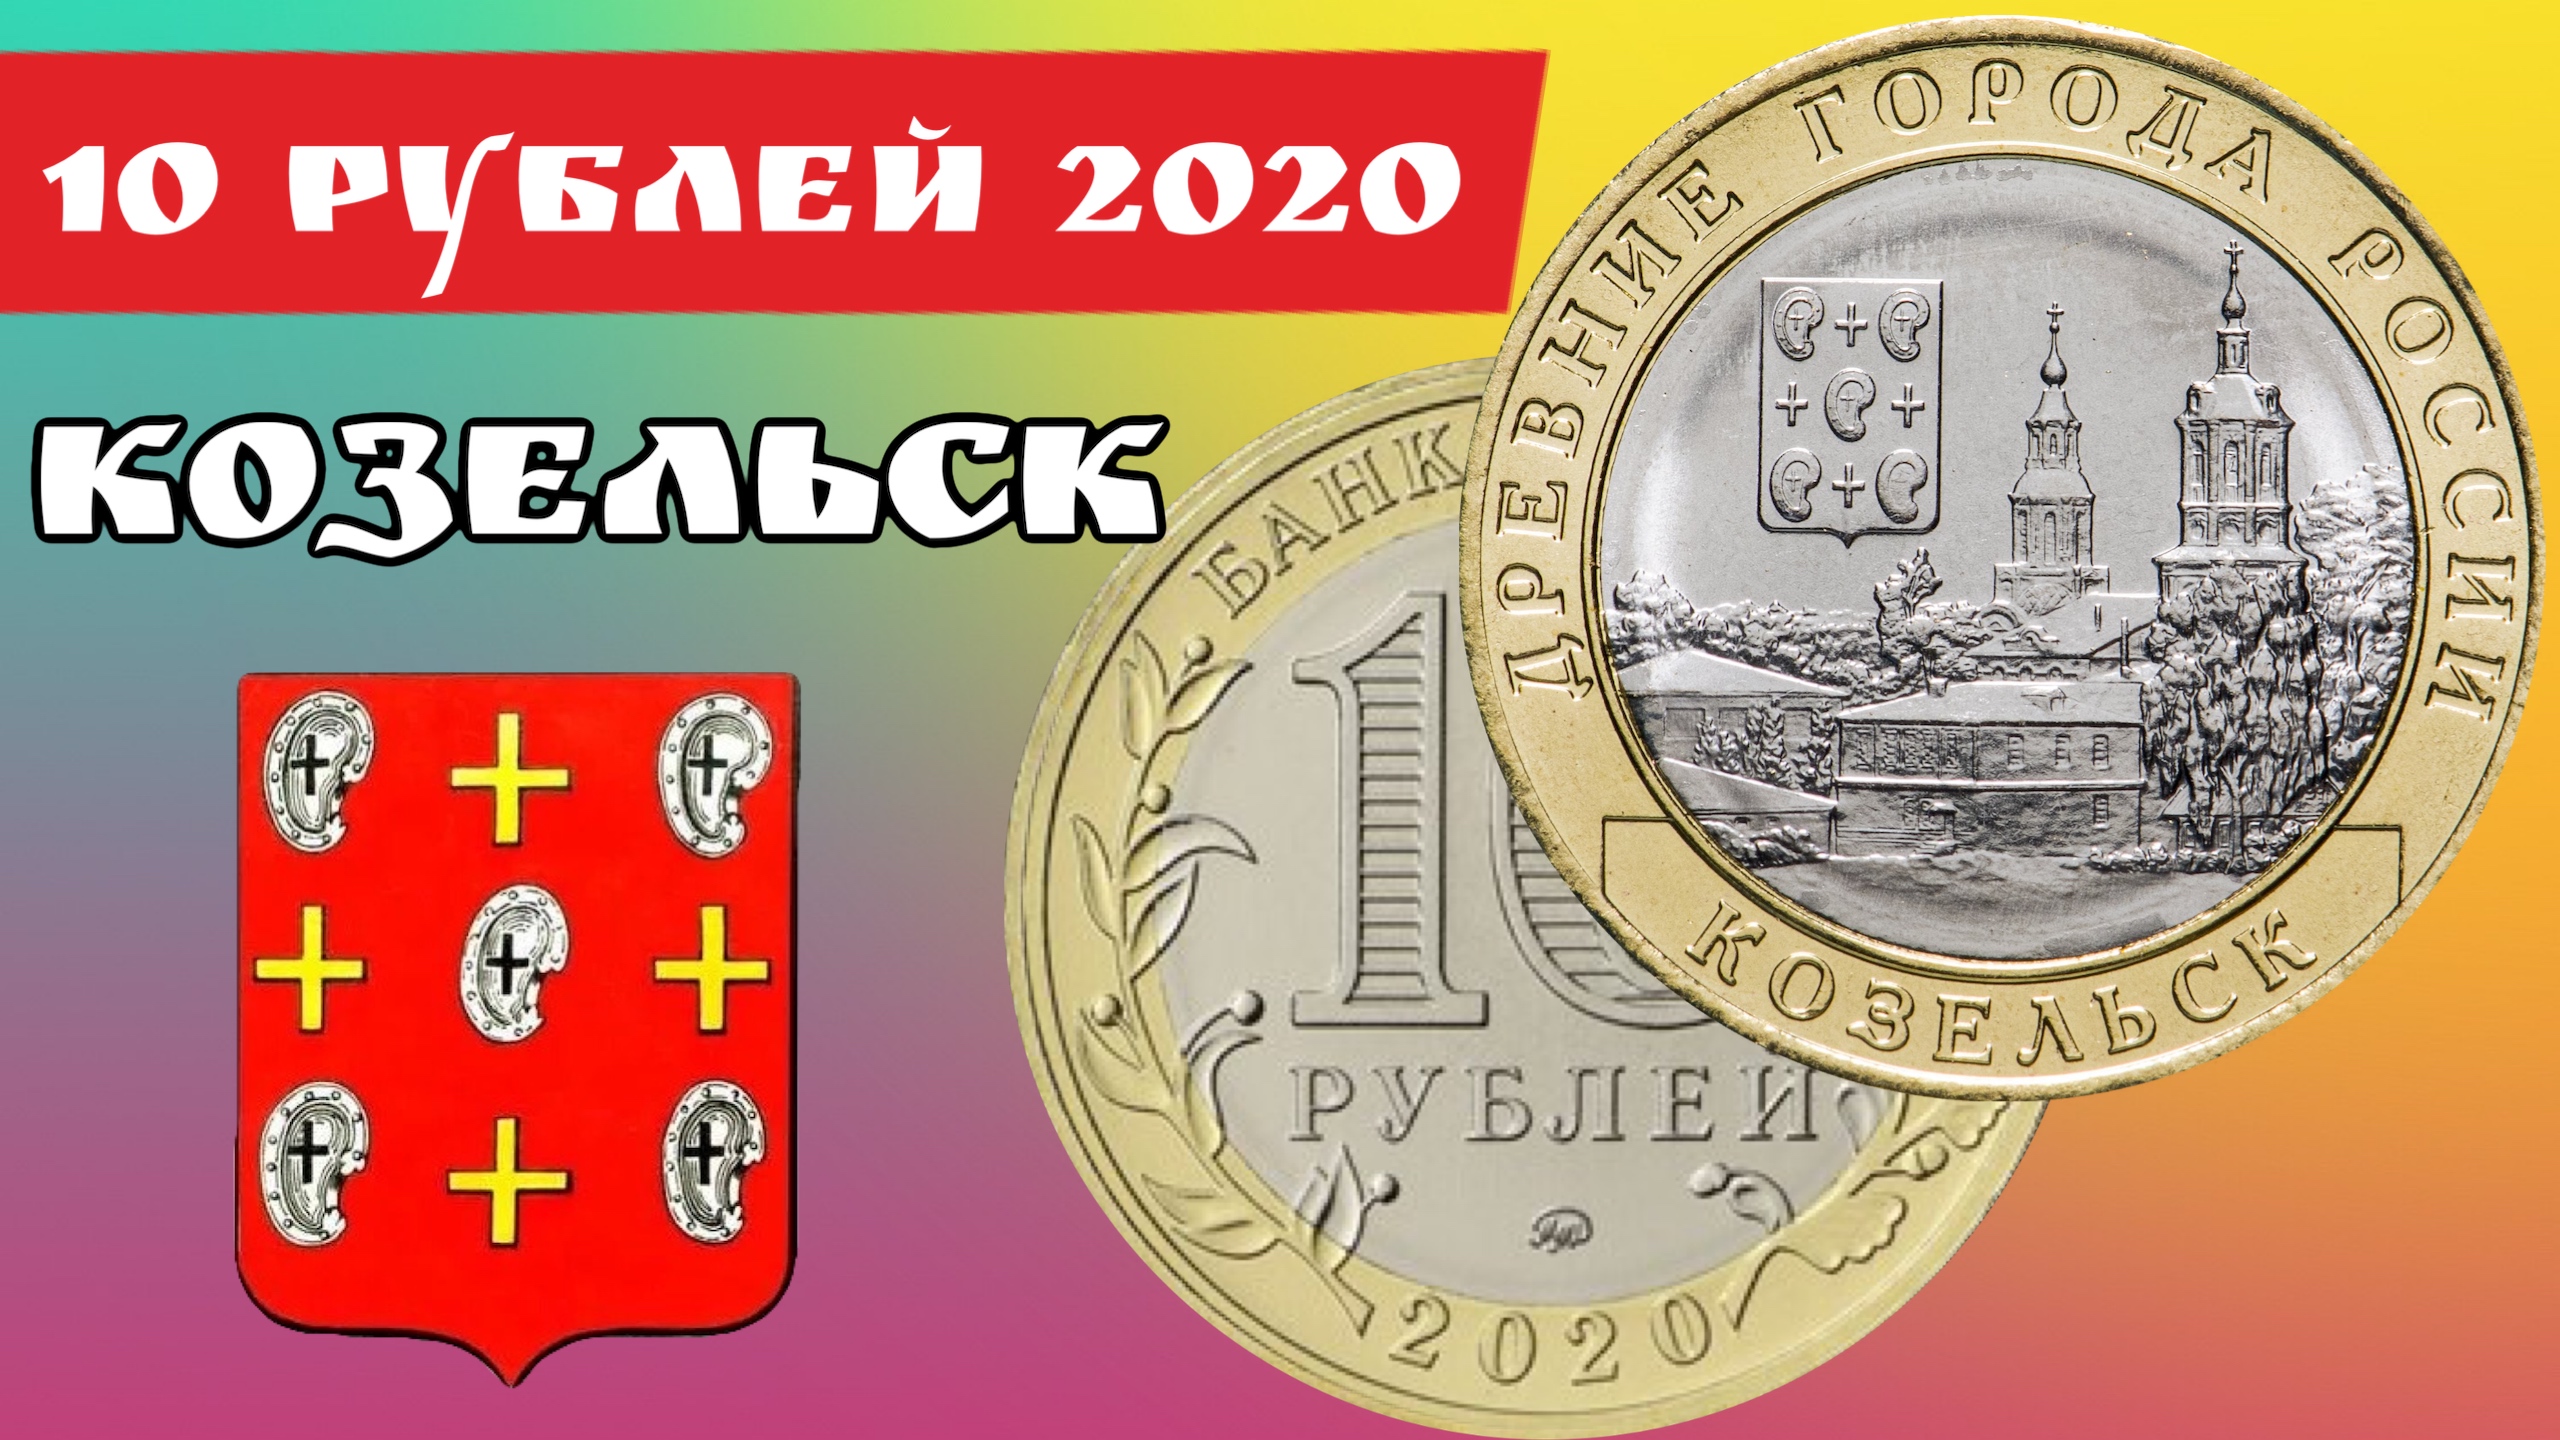 10 руб 2020 года